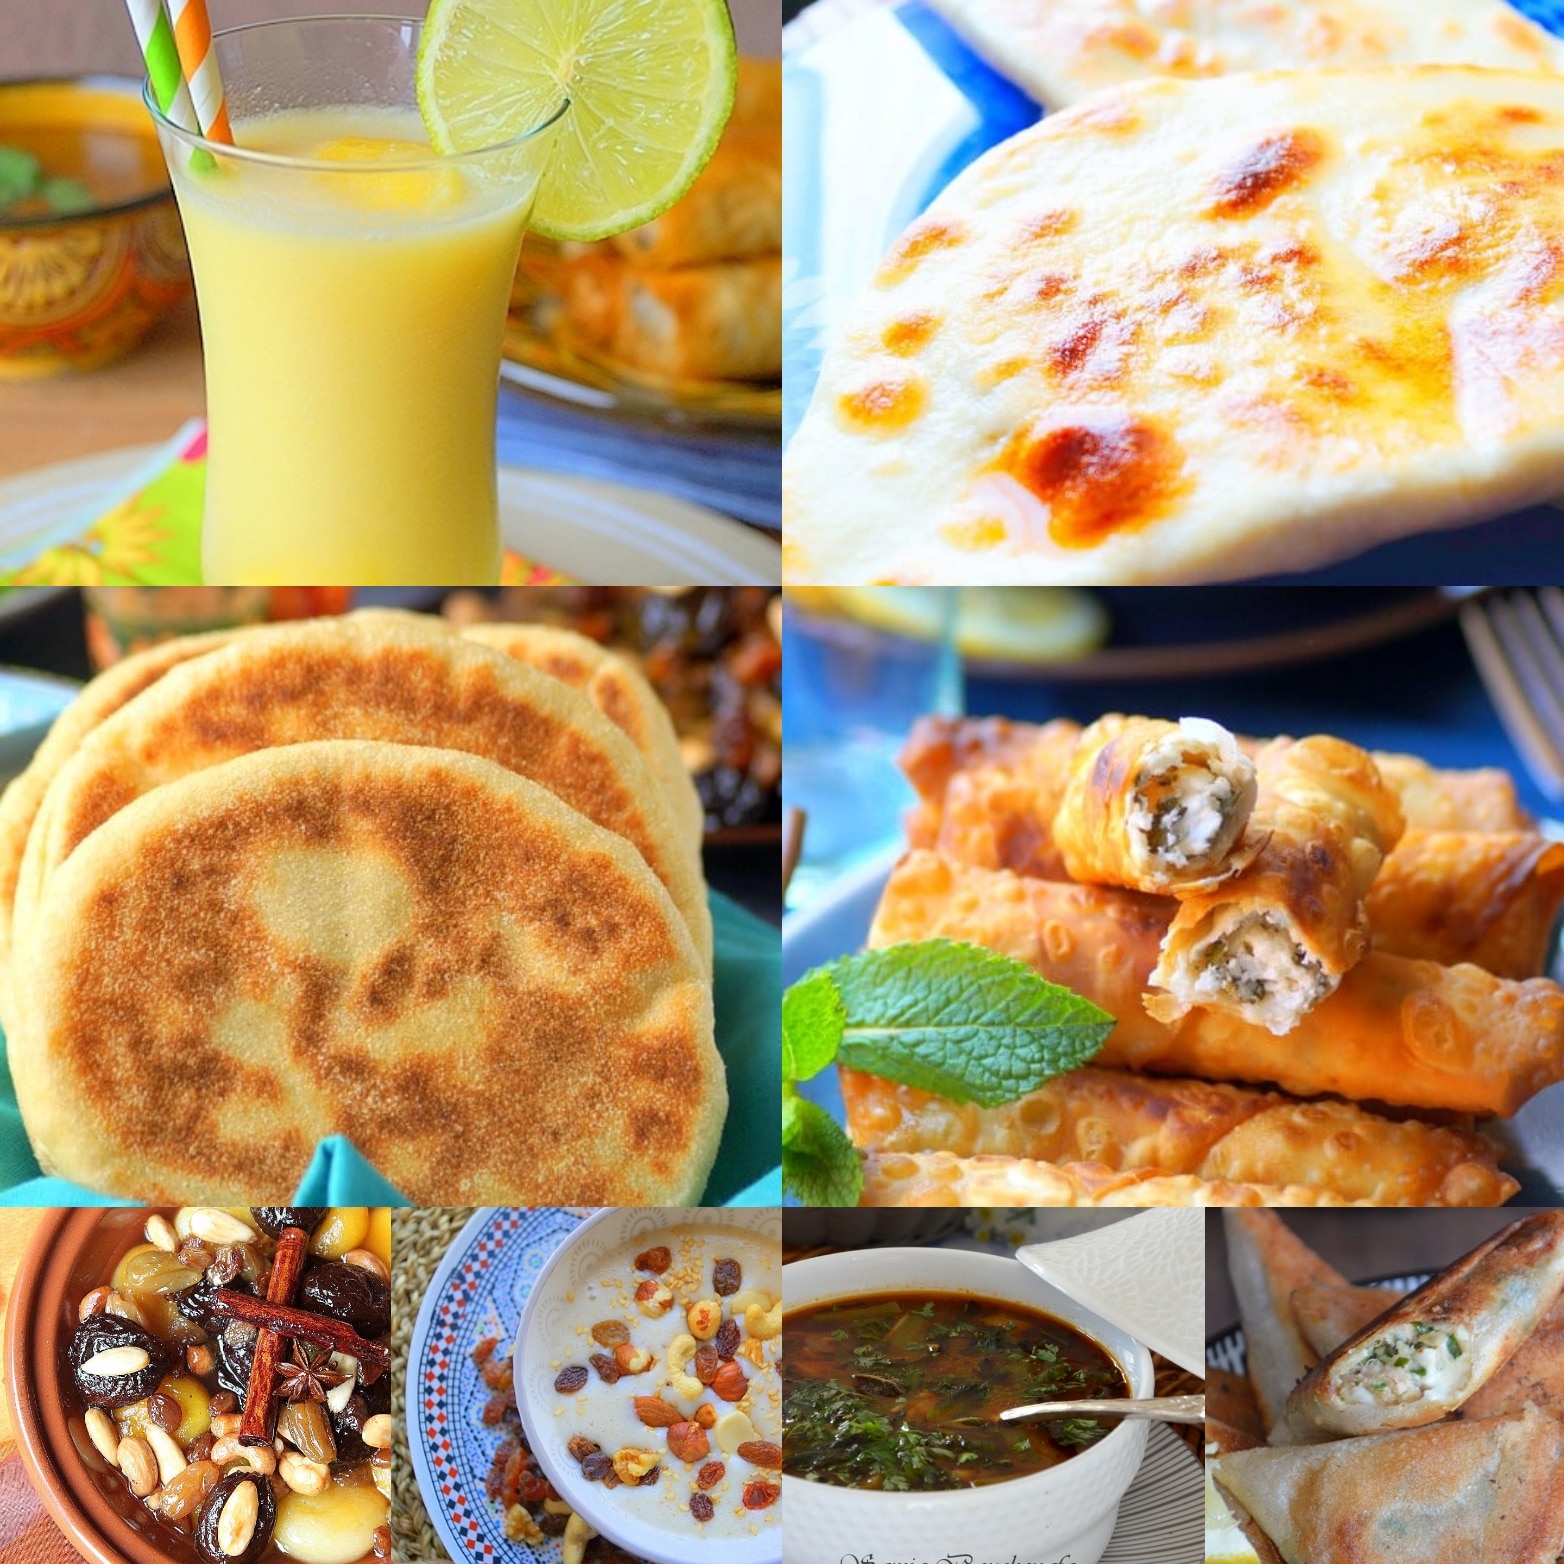 Menu Ramadan 2019 (entrées, soupes, plats, desserts, pains)